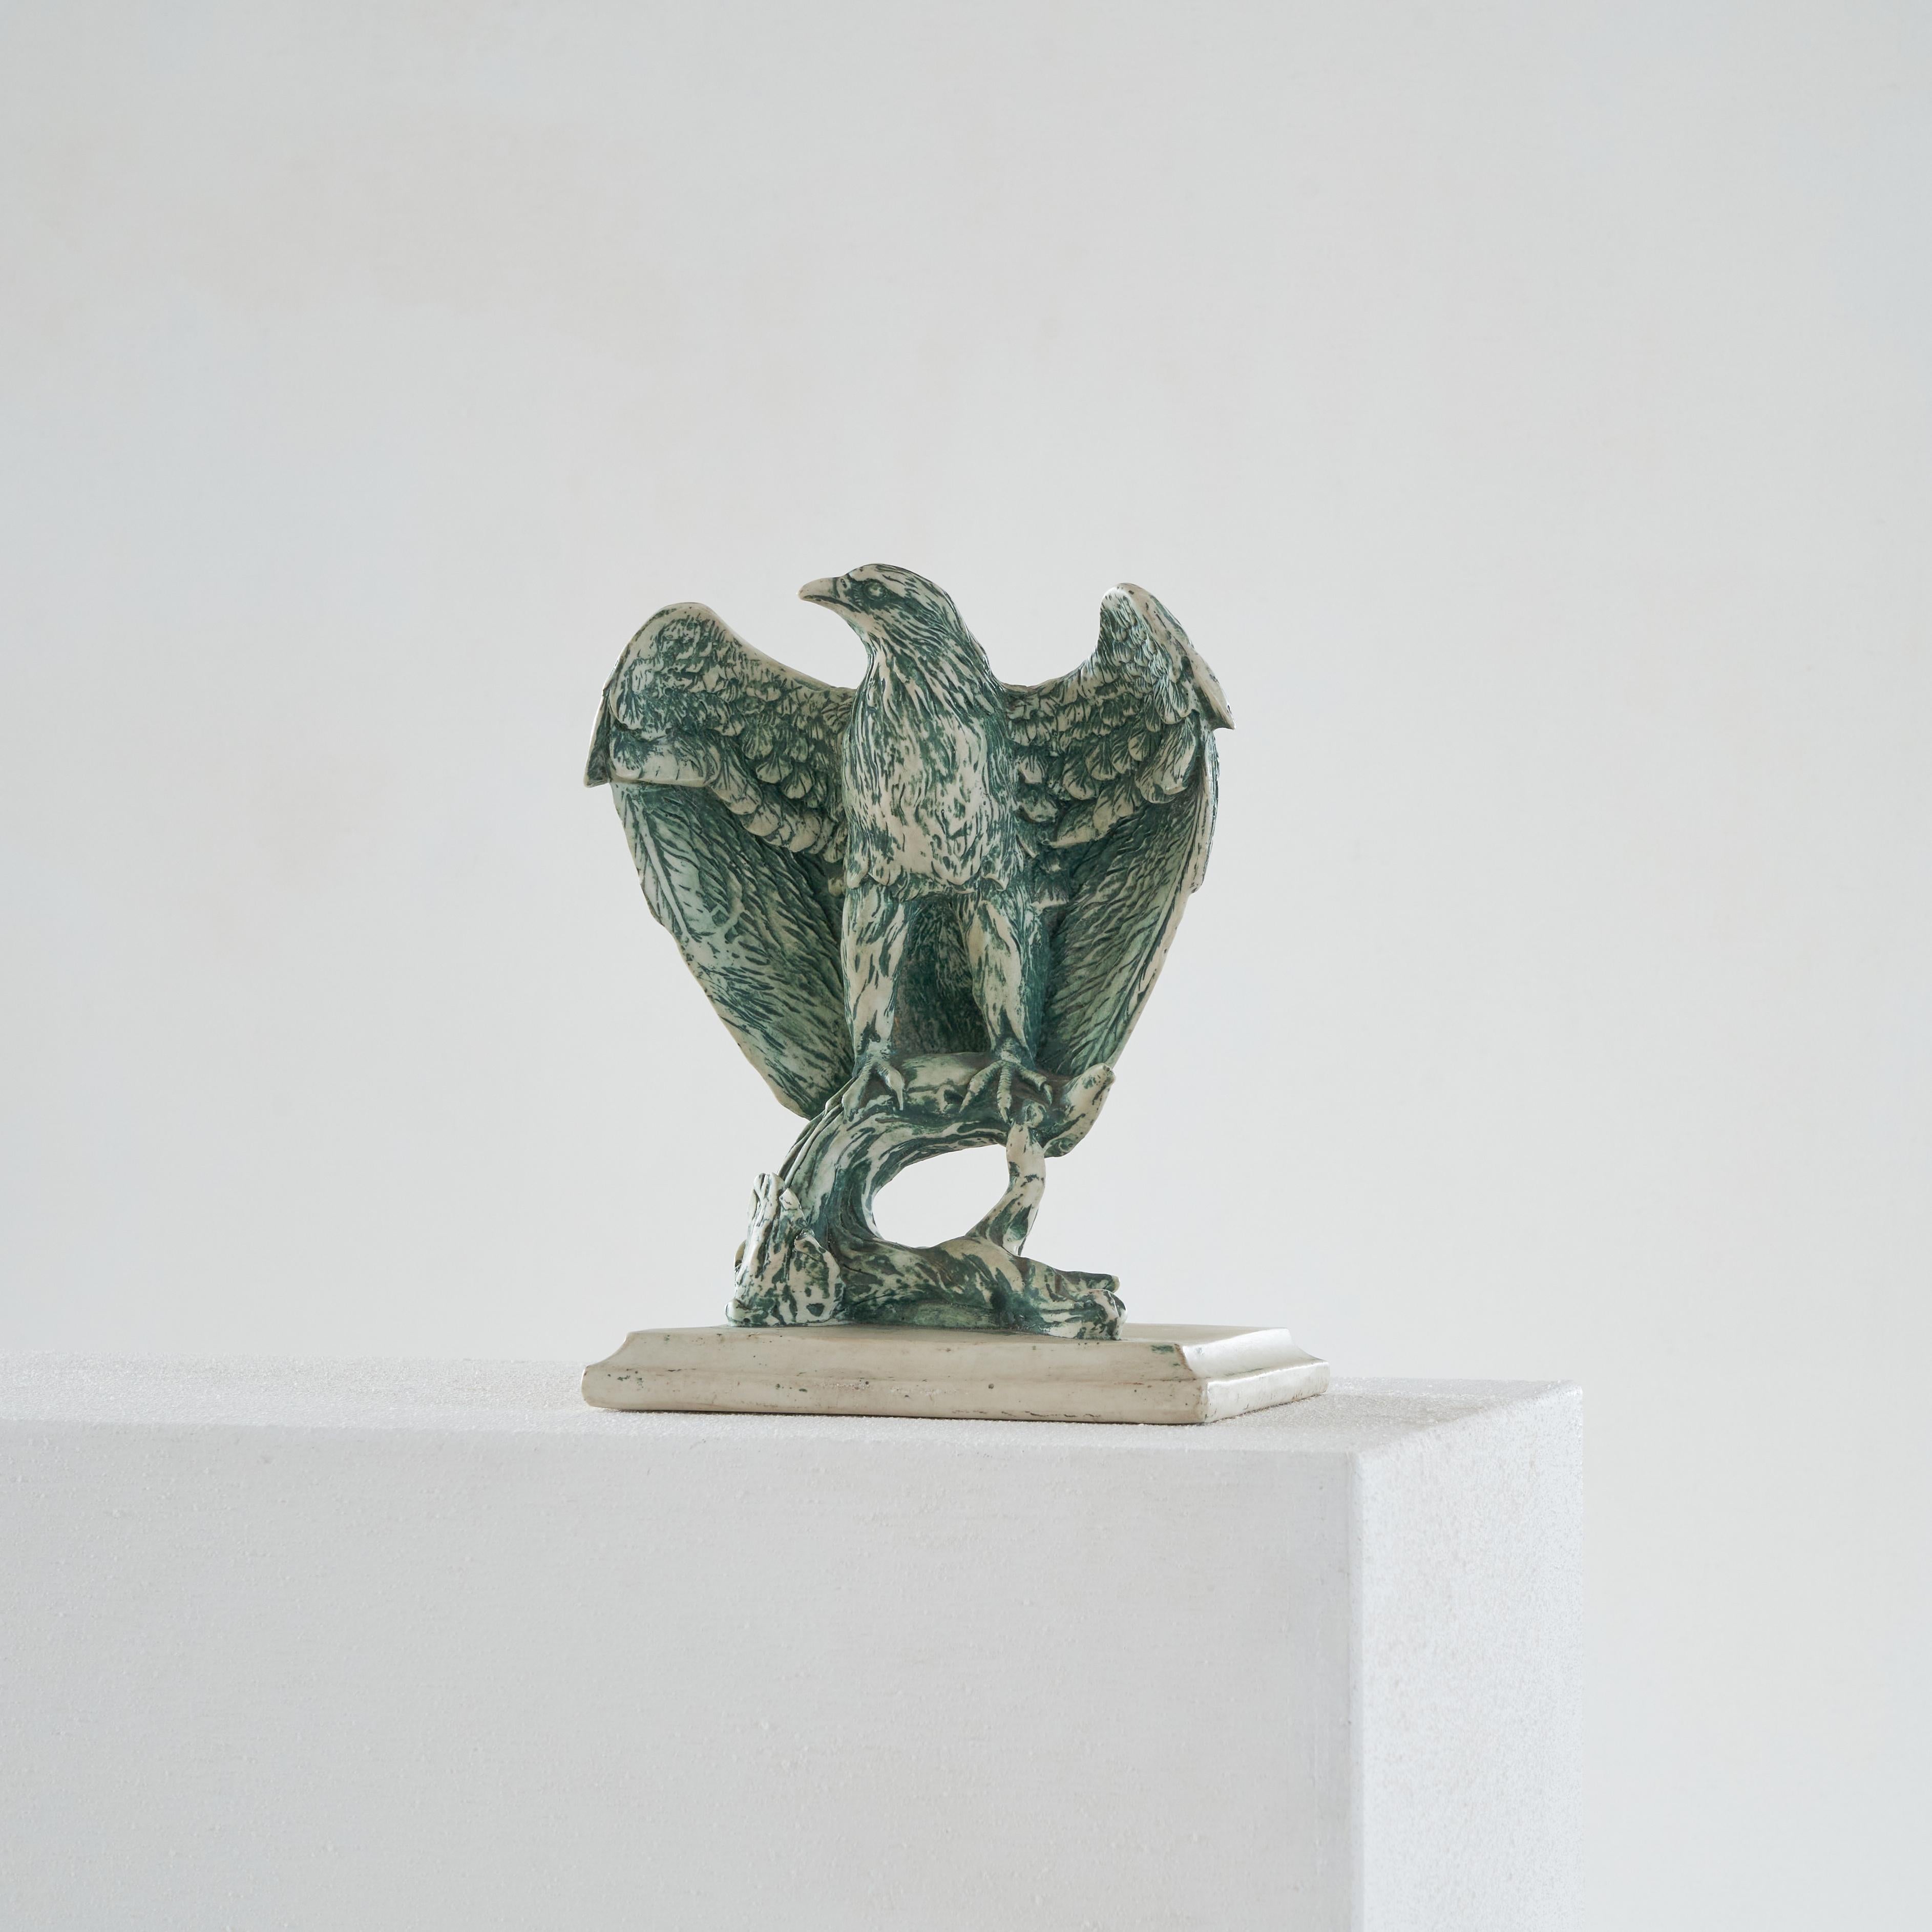 Sculpture d'aigle en céramique, 20e siècle. 

Magnifique sculpture d'un aigle, magnifiquement réalisée. Bien fait, de belles proportions et de jolis détails comme la glaçure verte et les plumes délicates. 

Elle représente un aigle assis sur une